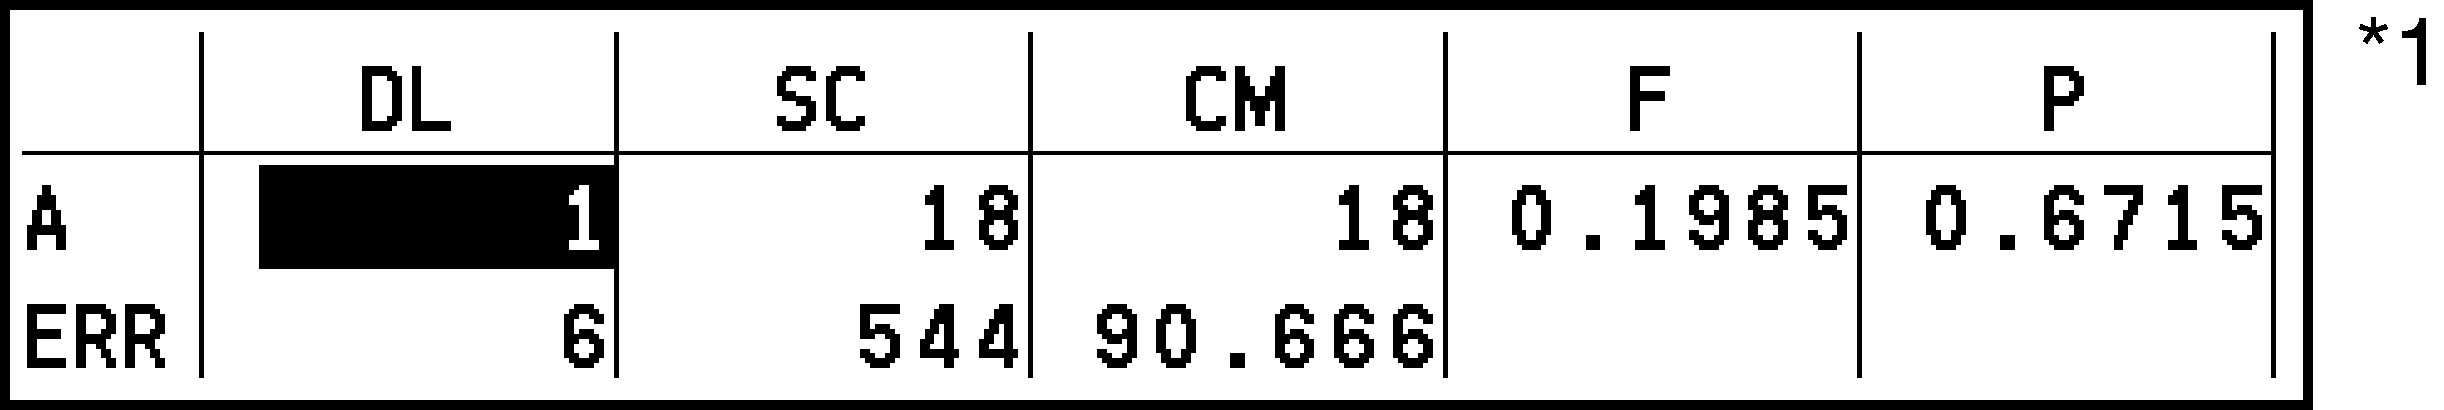 CY875_Statistics_Test Results Tab_1